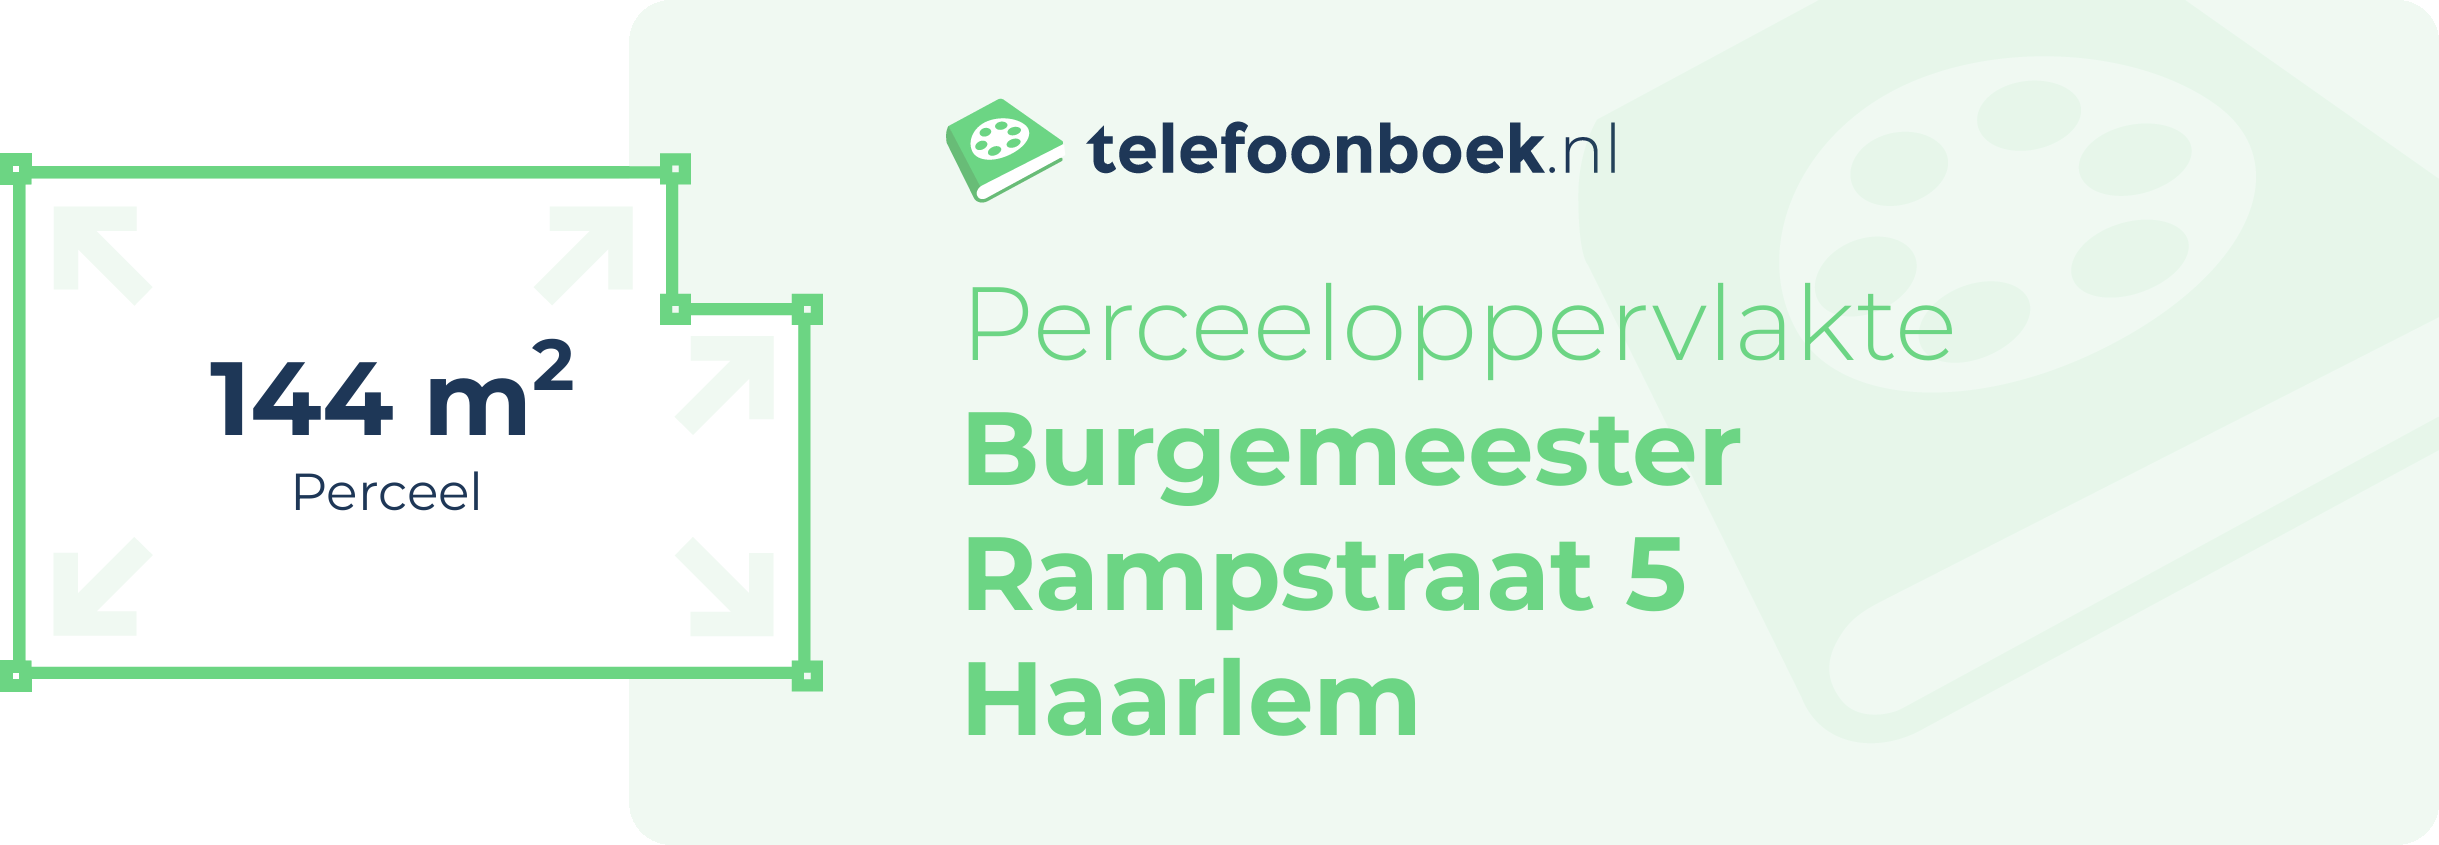 Perceeloppervlakte Burgemeester Rampstraat 5 Haarlem